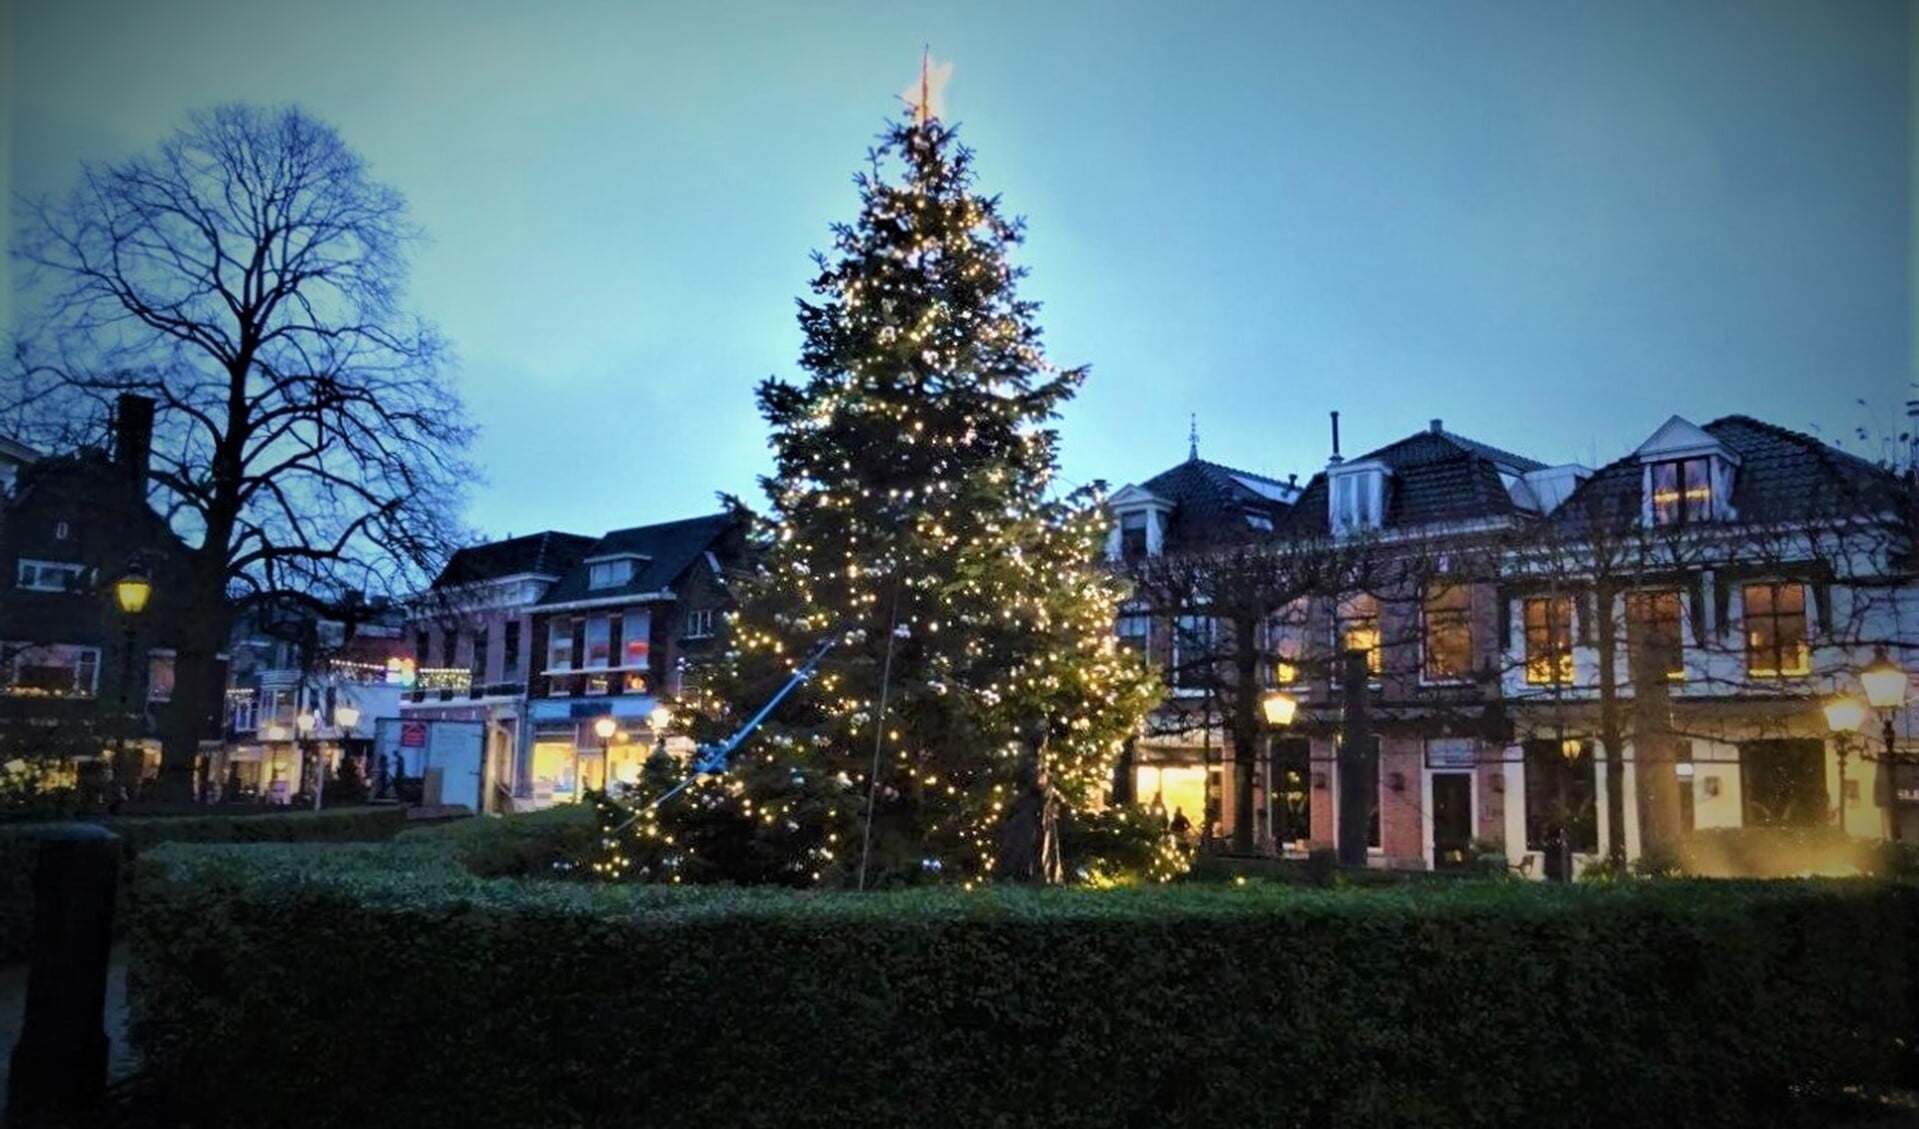 De kerstboom in de Herenstraat (foto: Ap de Heus).